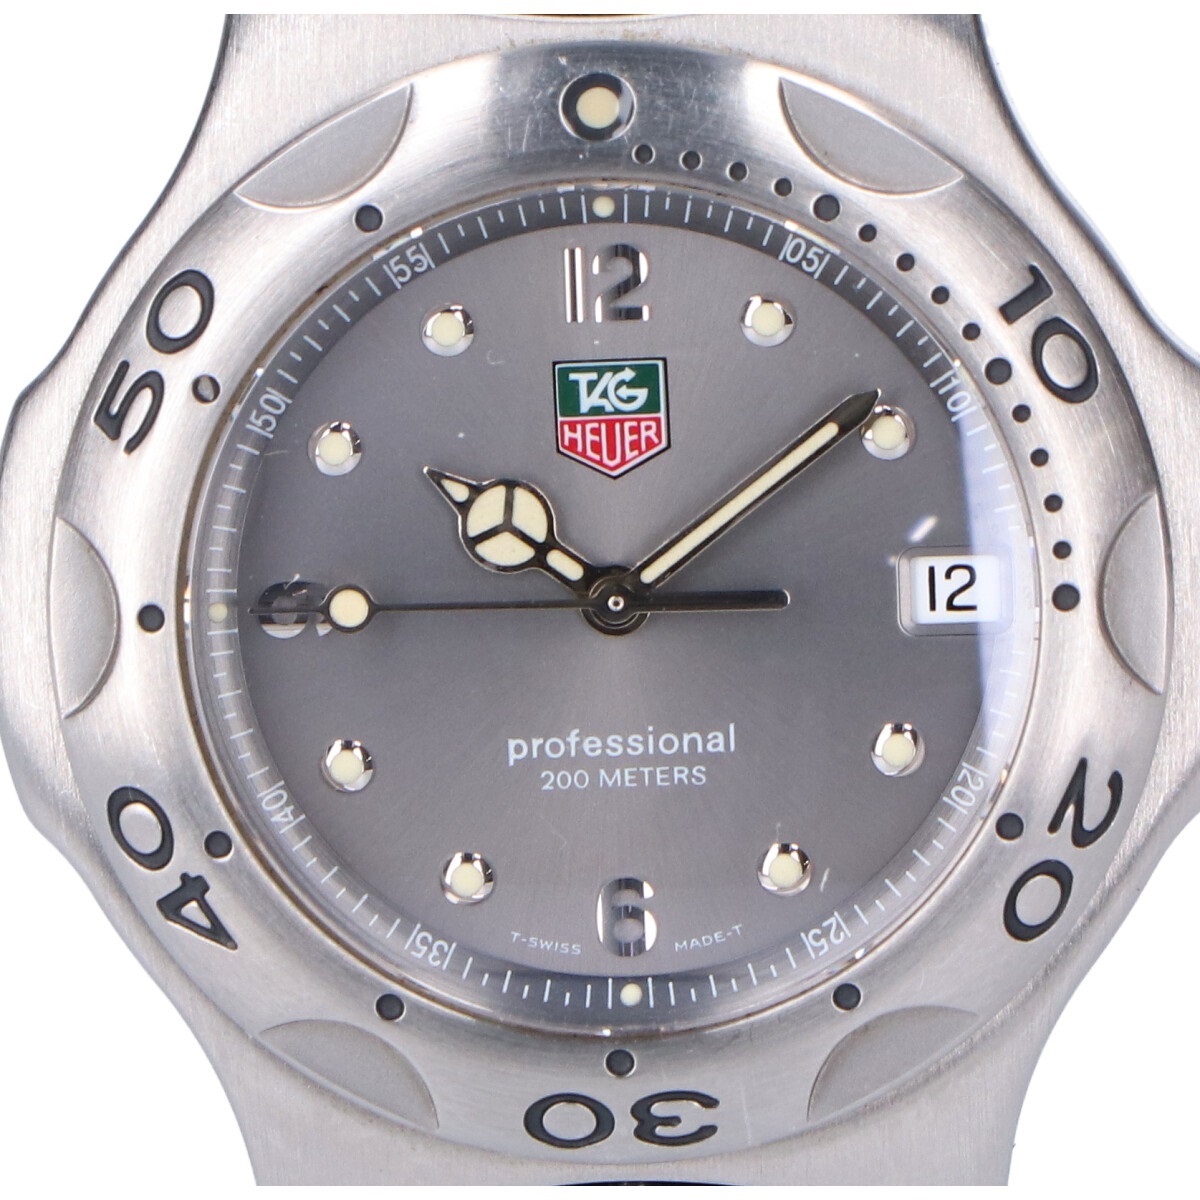 タグホイヤーのWL1111 キリウム SSケース デイト クオーツ 腕時計の買取実績です。